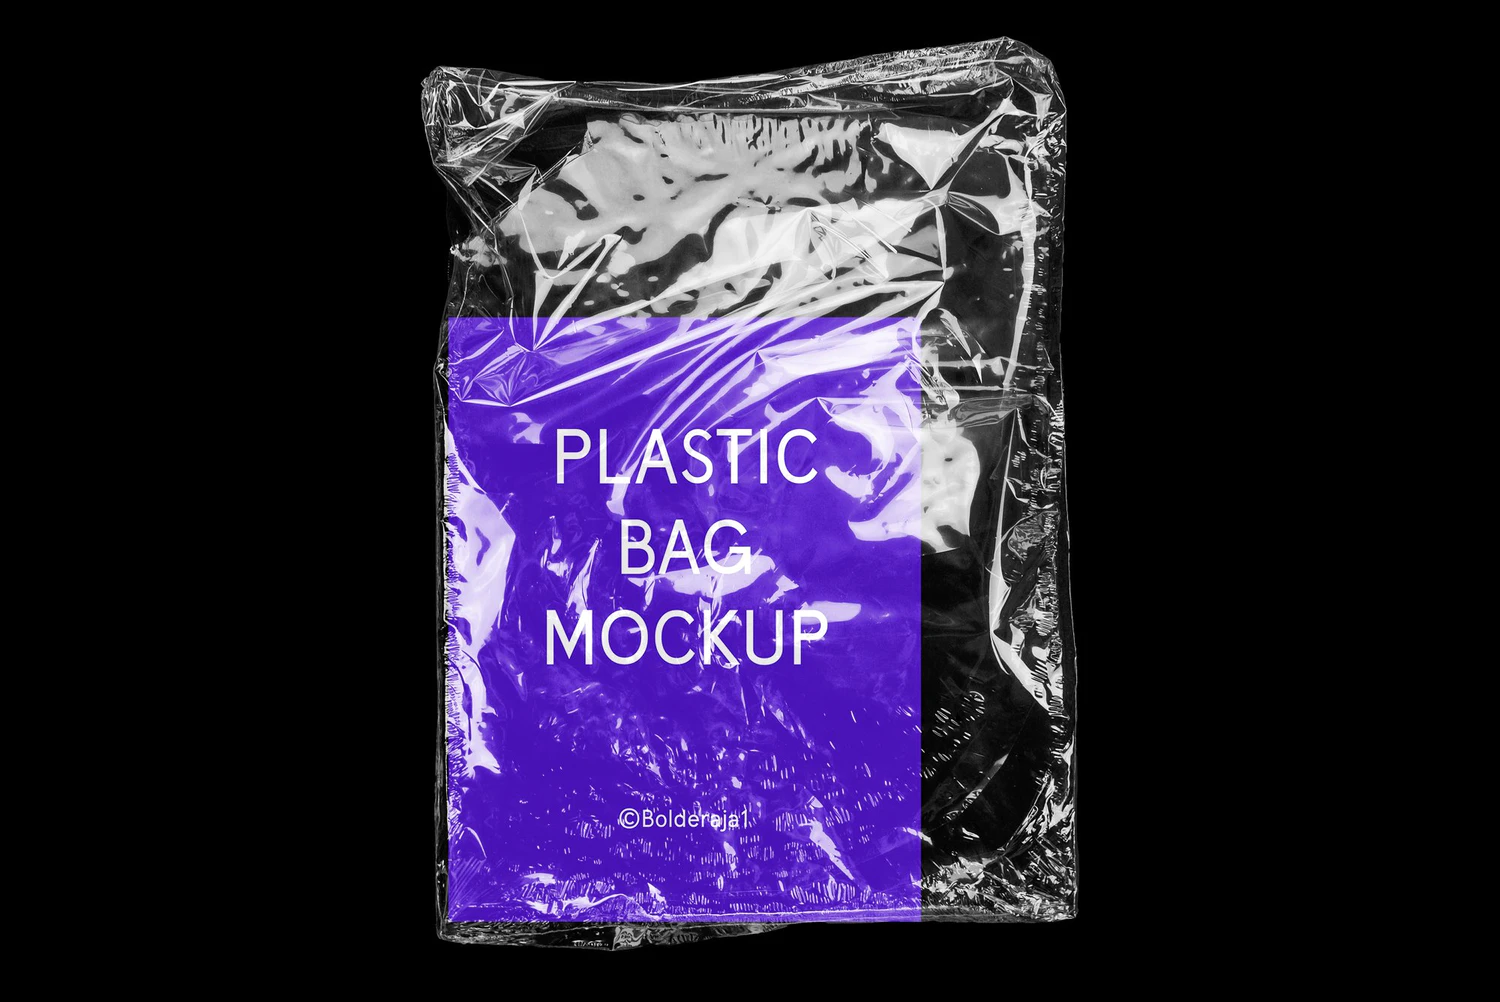 2659 复古潮流透明塑料袋包装纸保鲜膜褶皱ps样机素材包装展示效果模板 PLAST – Realistic Plastic Bag Mockup